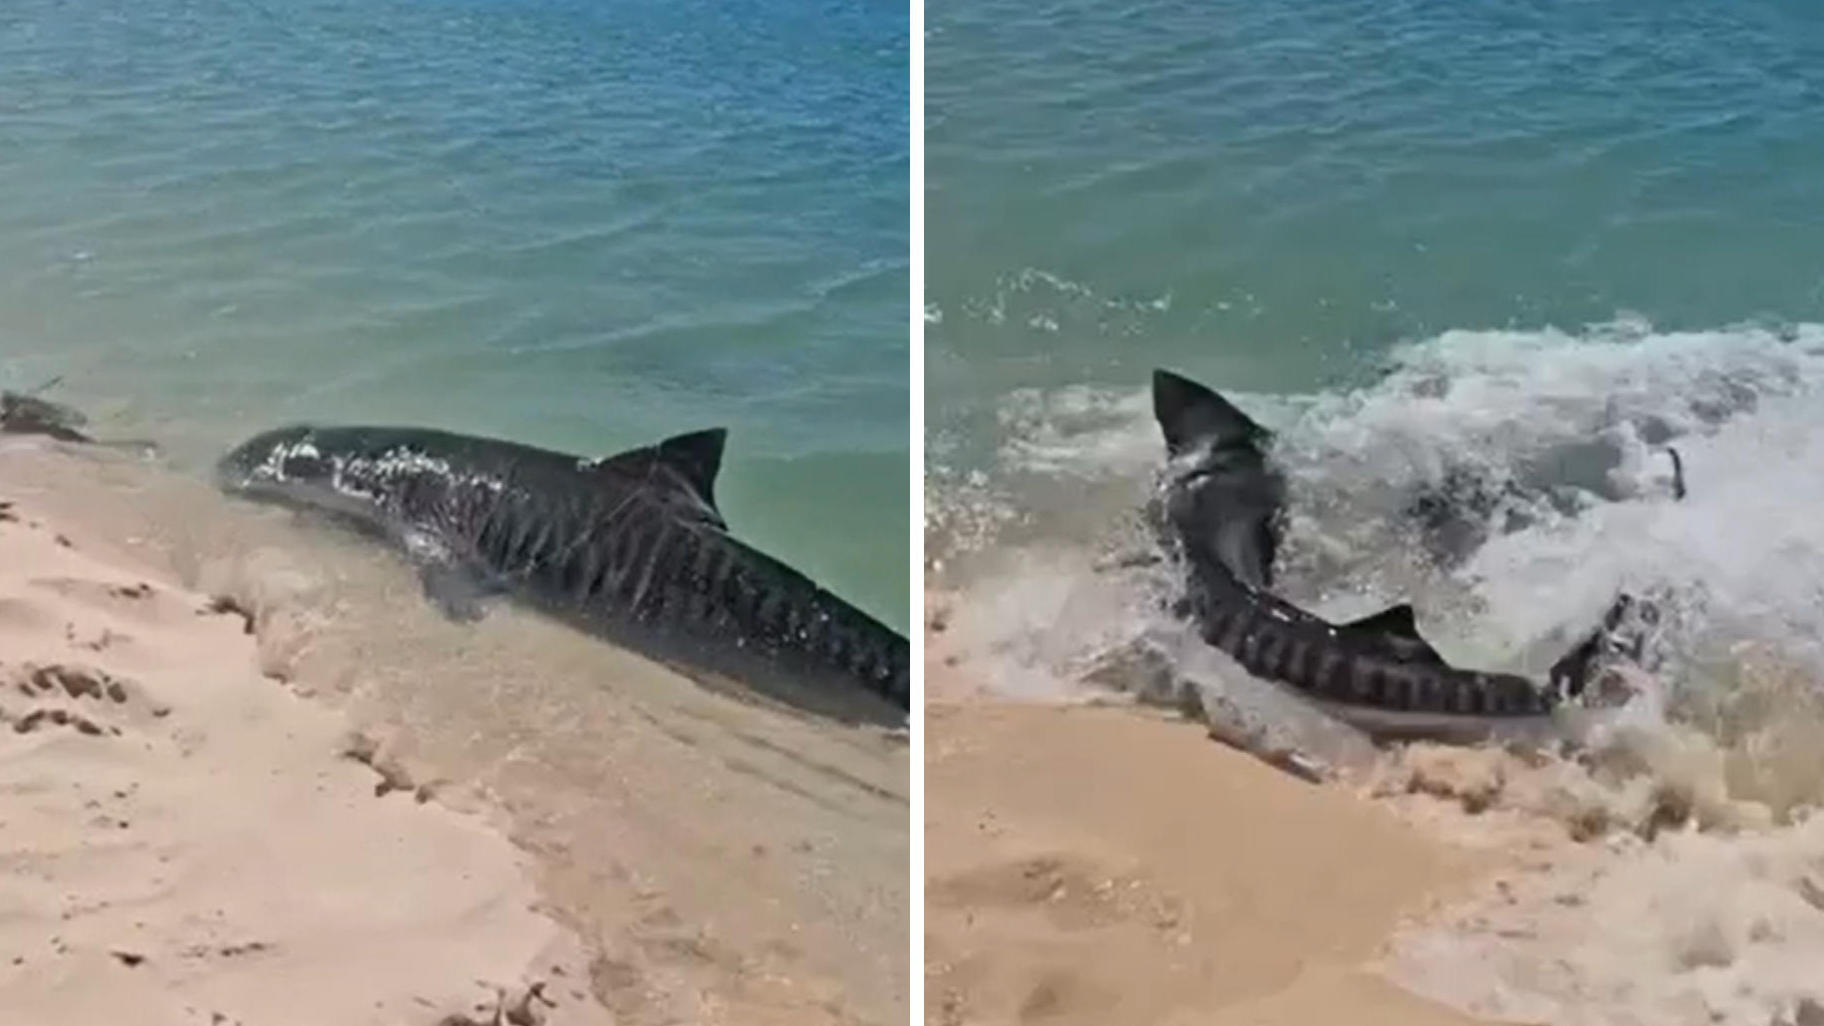 Uno squalo tigre insegue una tartaruga: i visitatori della spiaggia rimangono scioccati e all'improvviso sparano fuori dall'acqua!